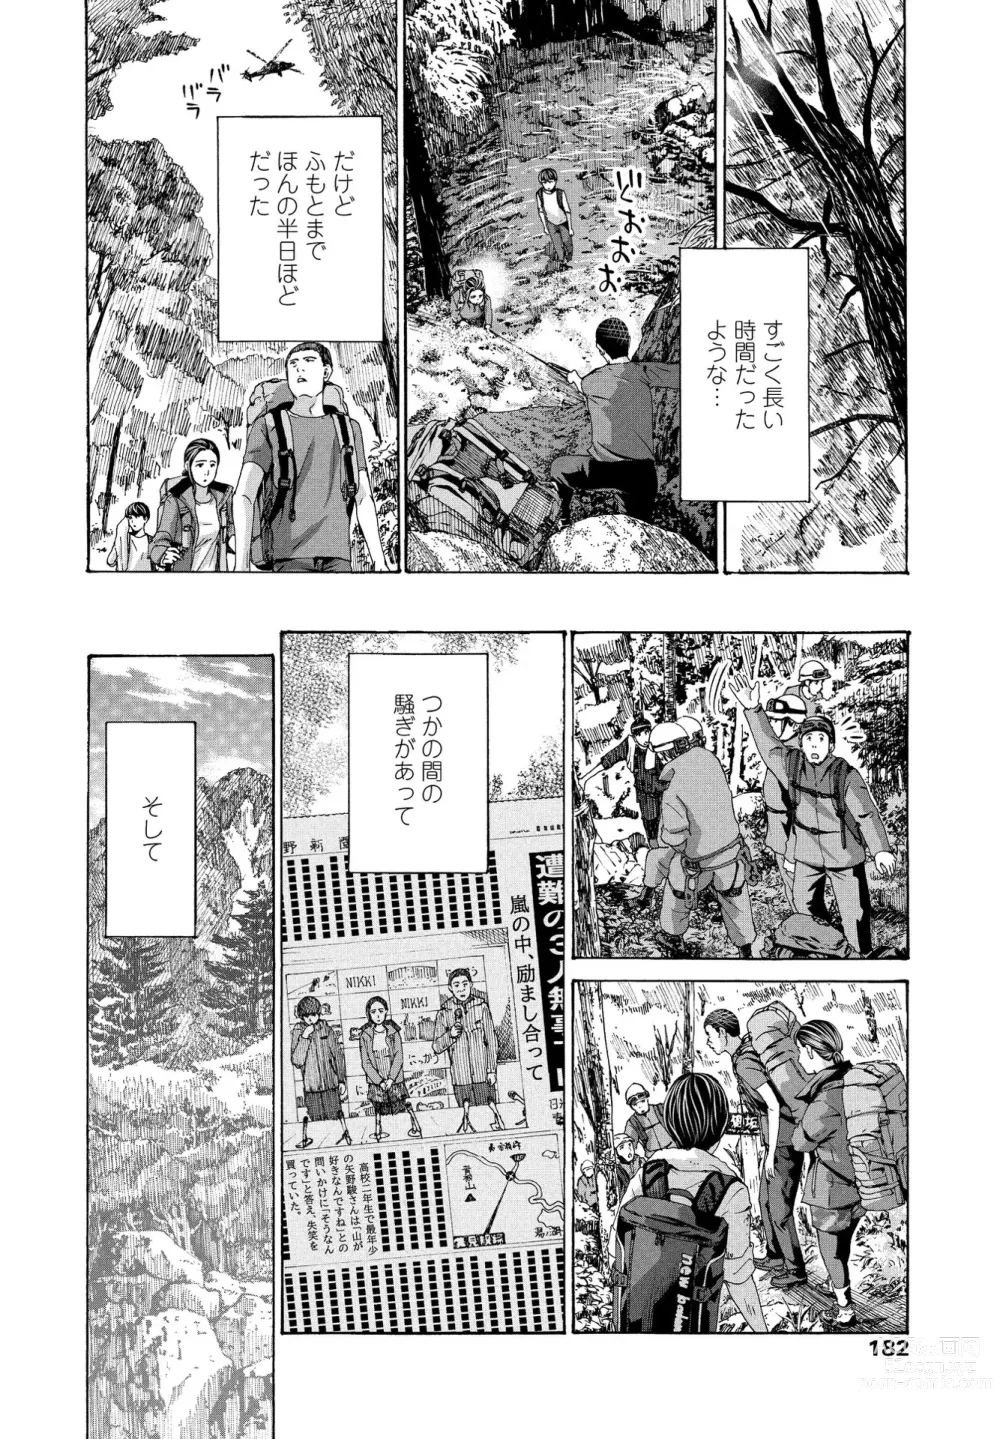 Page 52 of manga Hinangoya nite